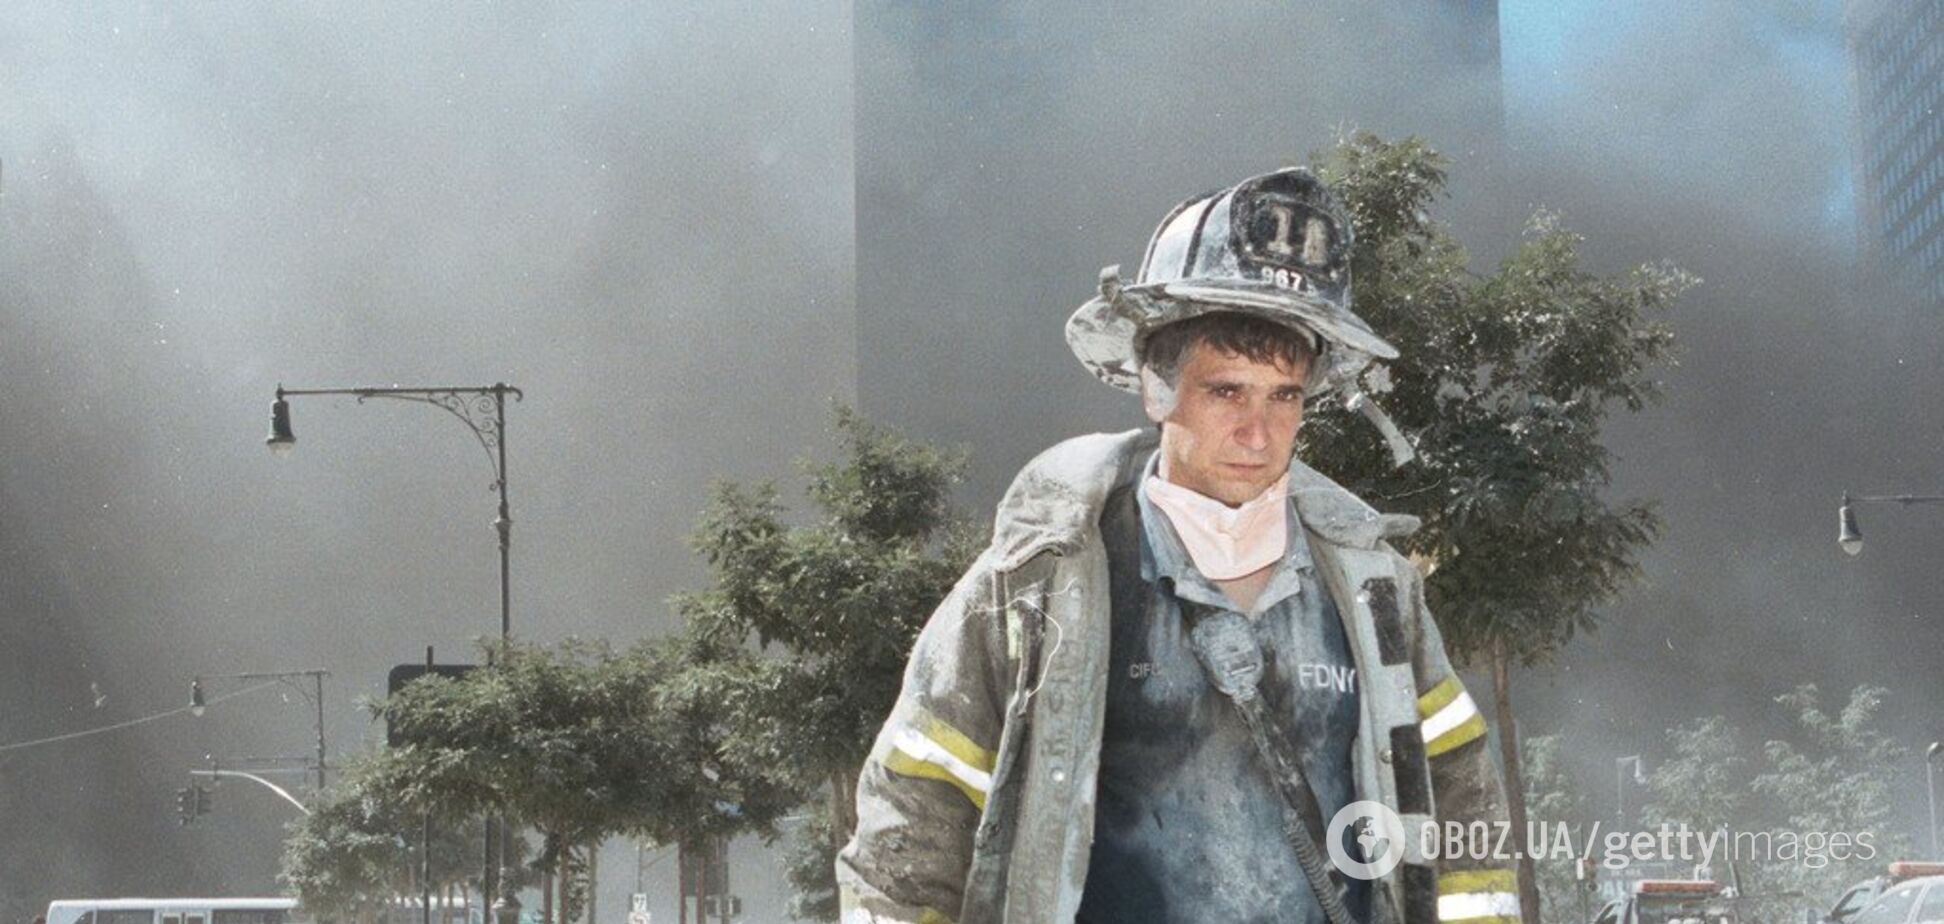 День Патриота: в США чтут память жертв терактов 11 сентября